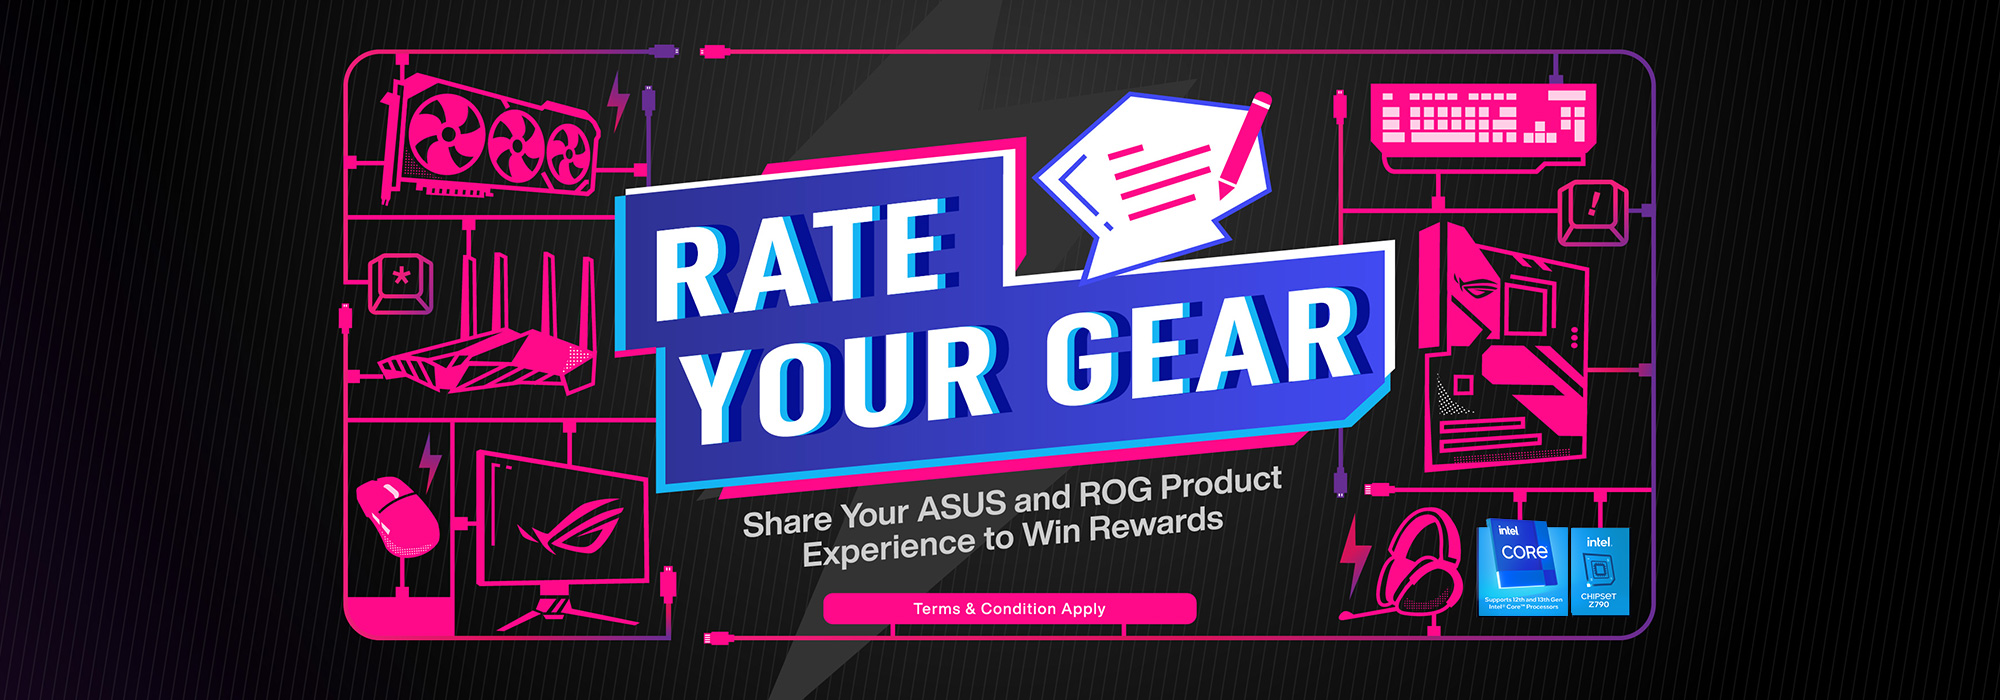 RATE YOUR GEAR - Deel je ASUS- en ROG-productervaringen om beloningen te winnen (Algemene Voorwaarden zijn van toepassing)